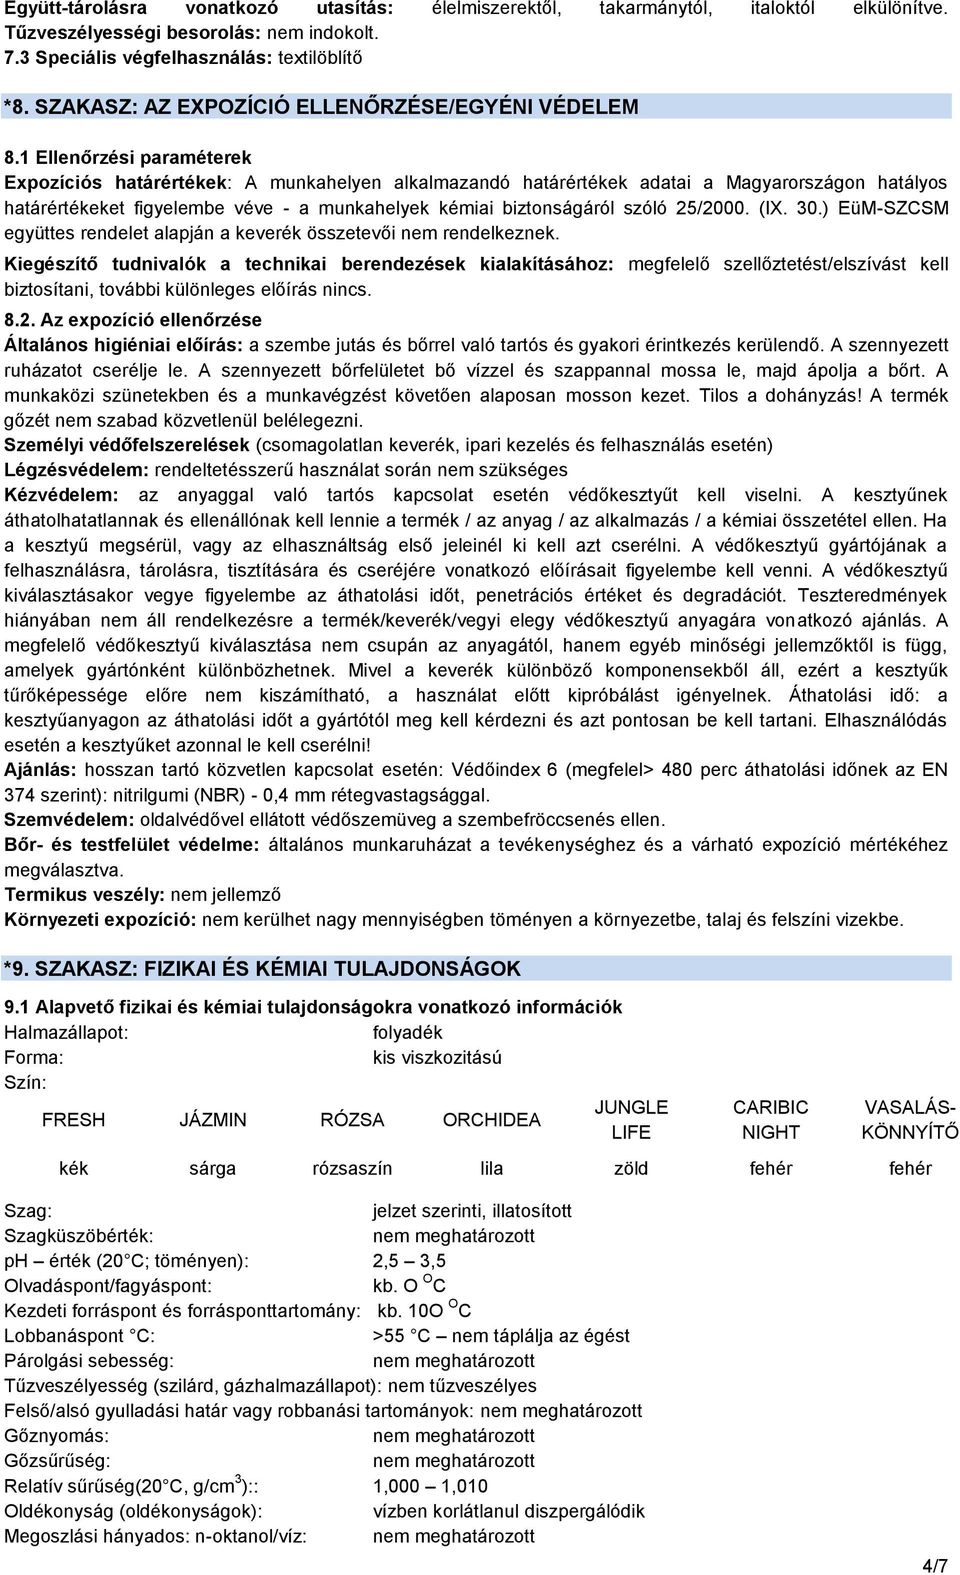 1 Ellenőrzési paraméterek Expozíciós határértékek: A munkahelyen alkalmazandó határértékek adatai a Magyarországon hatályos határértékeket figyelembe véve - a munkahelyek kémiai biztonságáról szóló